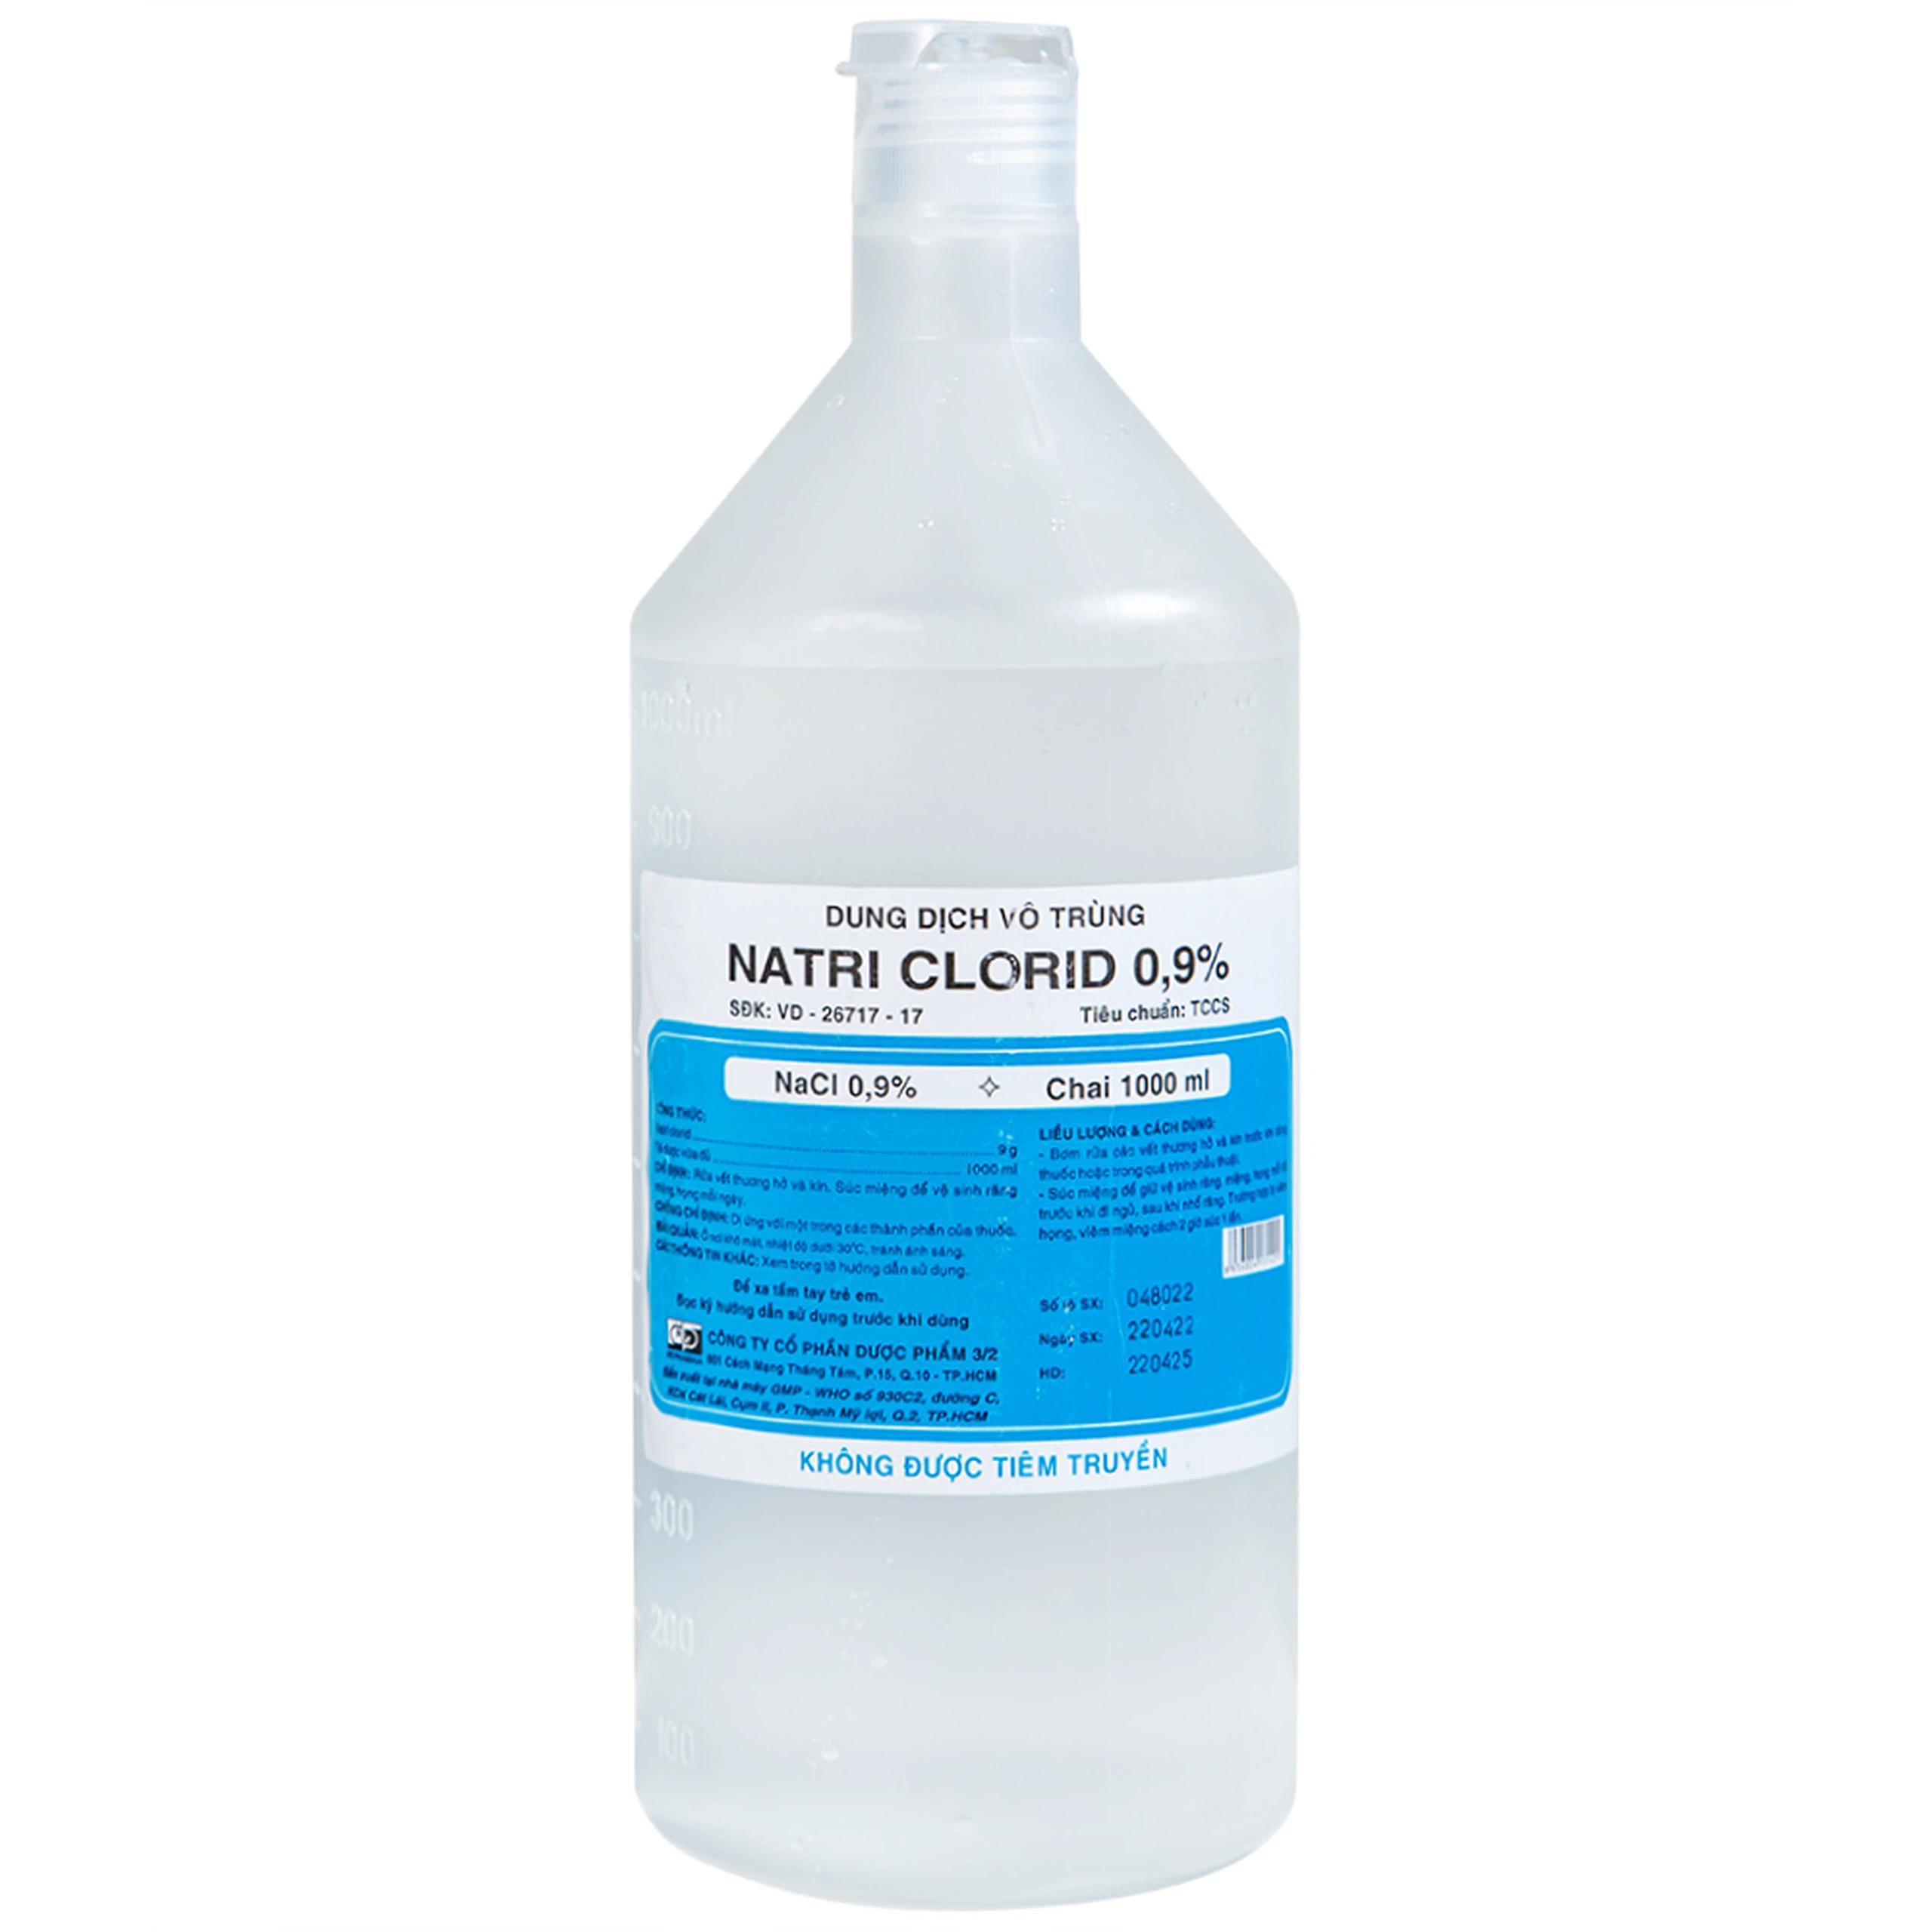 Dung dịch vô trùng Natri Clorid 0.9% Dược 3-2 rửa vết thương hở và kín, súc miệng (1000ml)